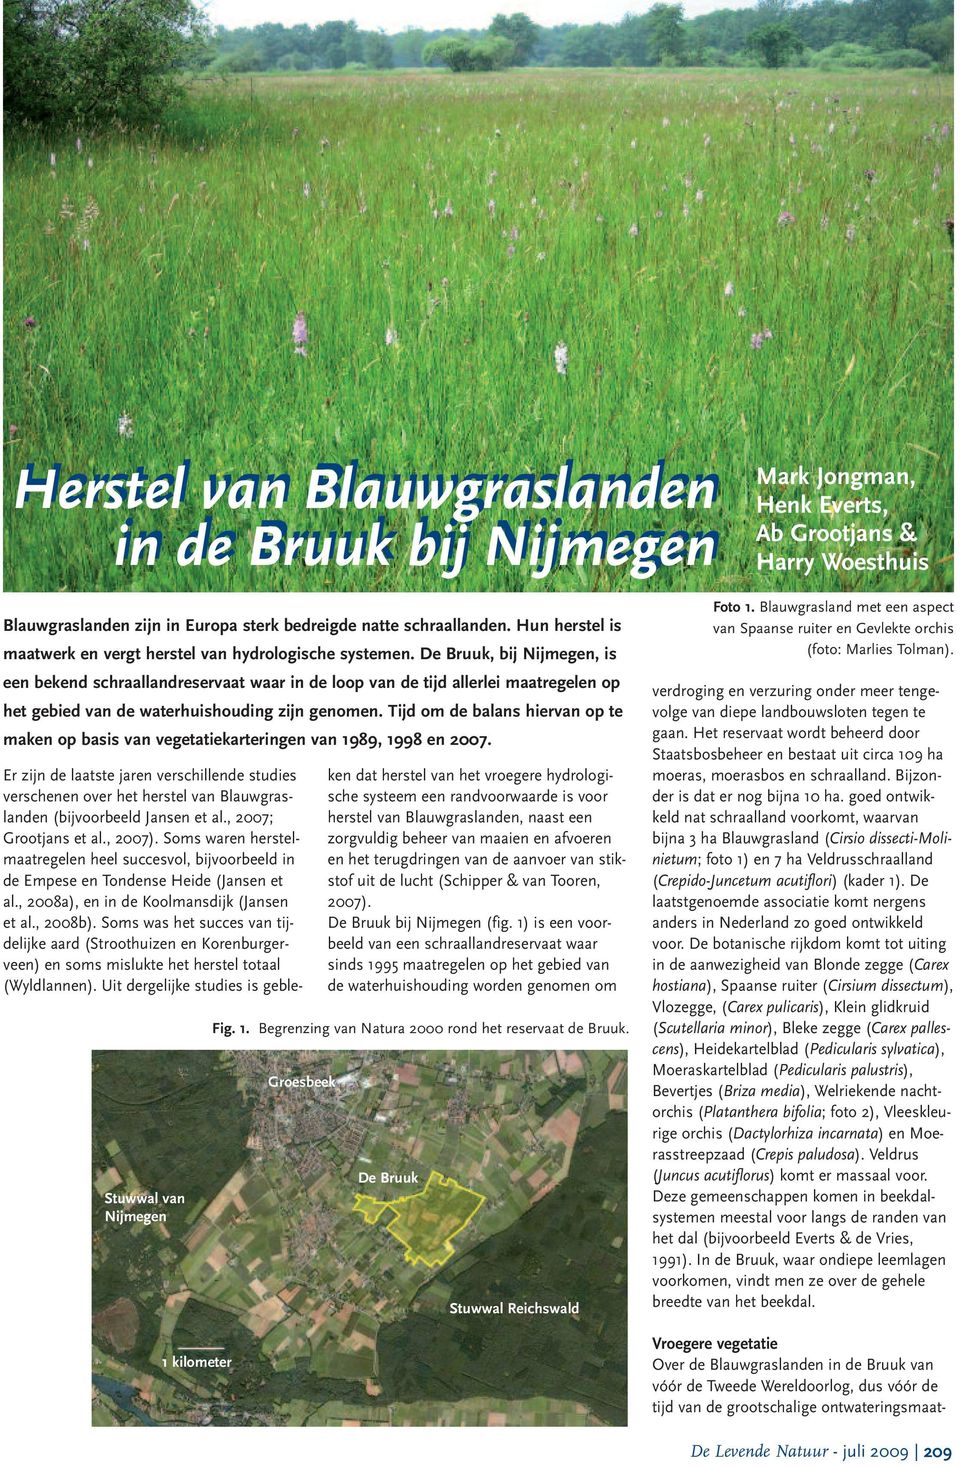 De Bruuk, bij Nijmegen, is een bekend schraallandreservaat waar in de loop van de tijd allerlei maatregelen op het gebied van de waterhuishouding zijn genomen.